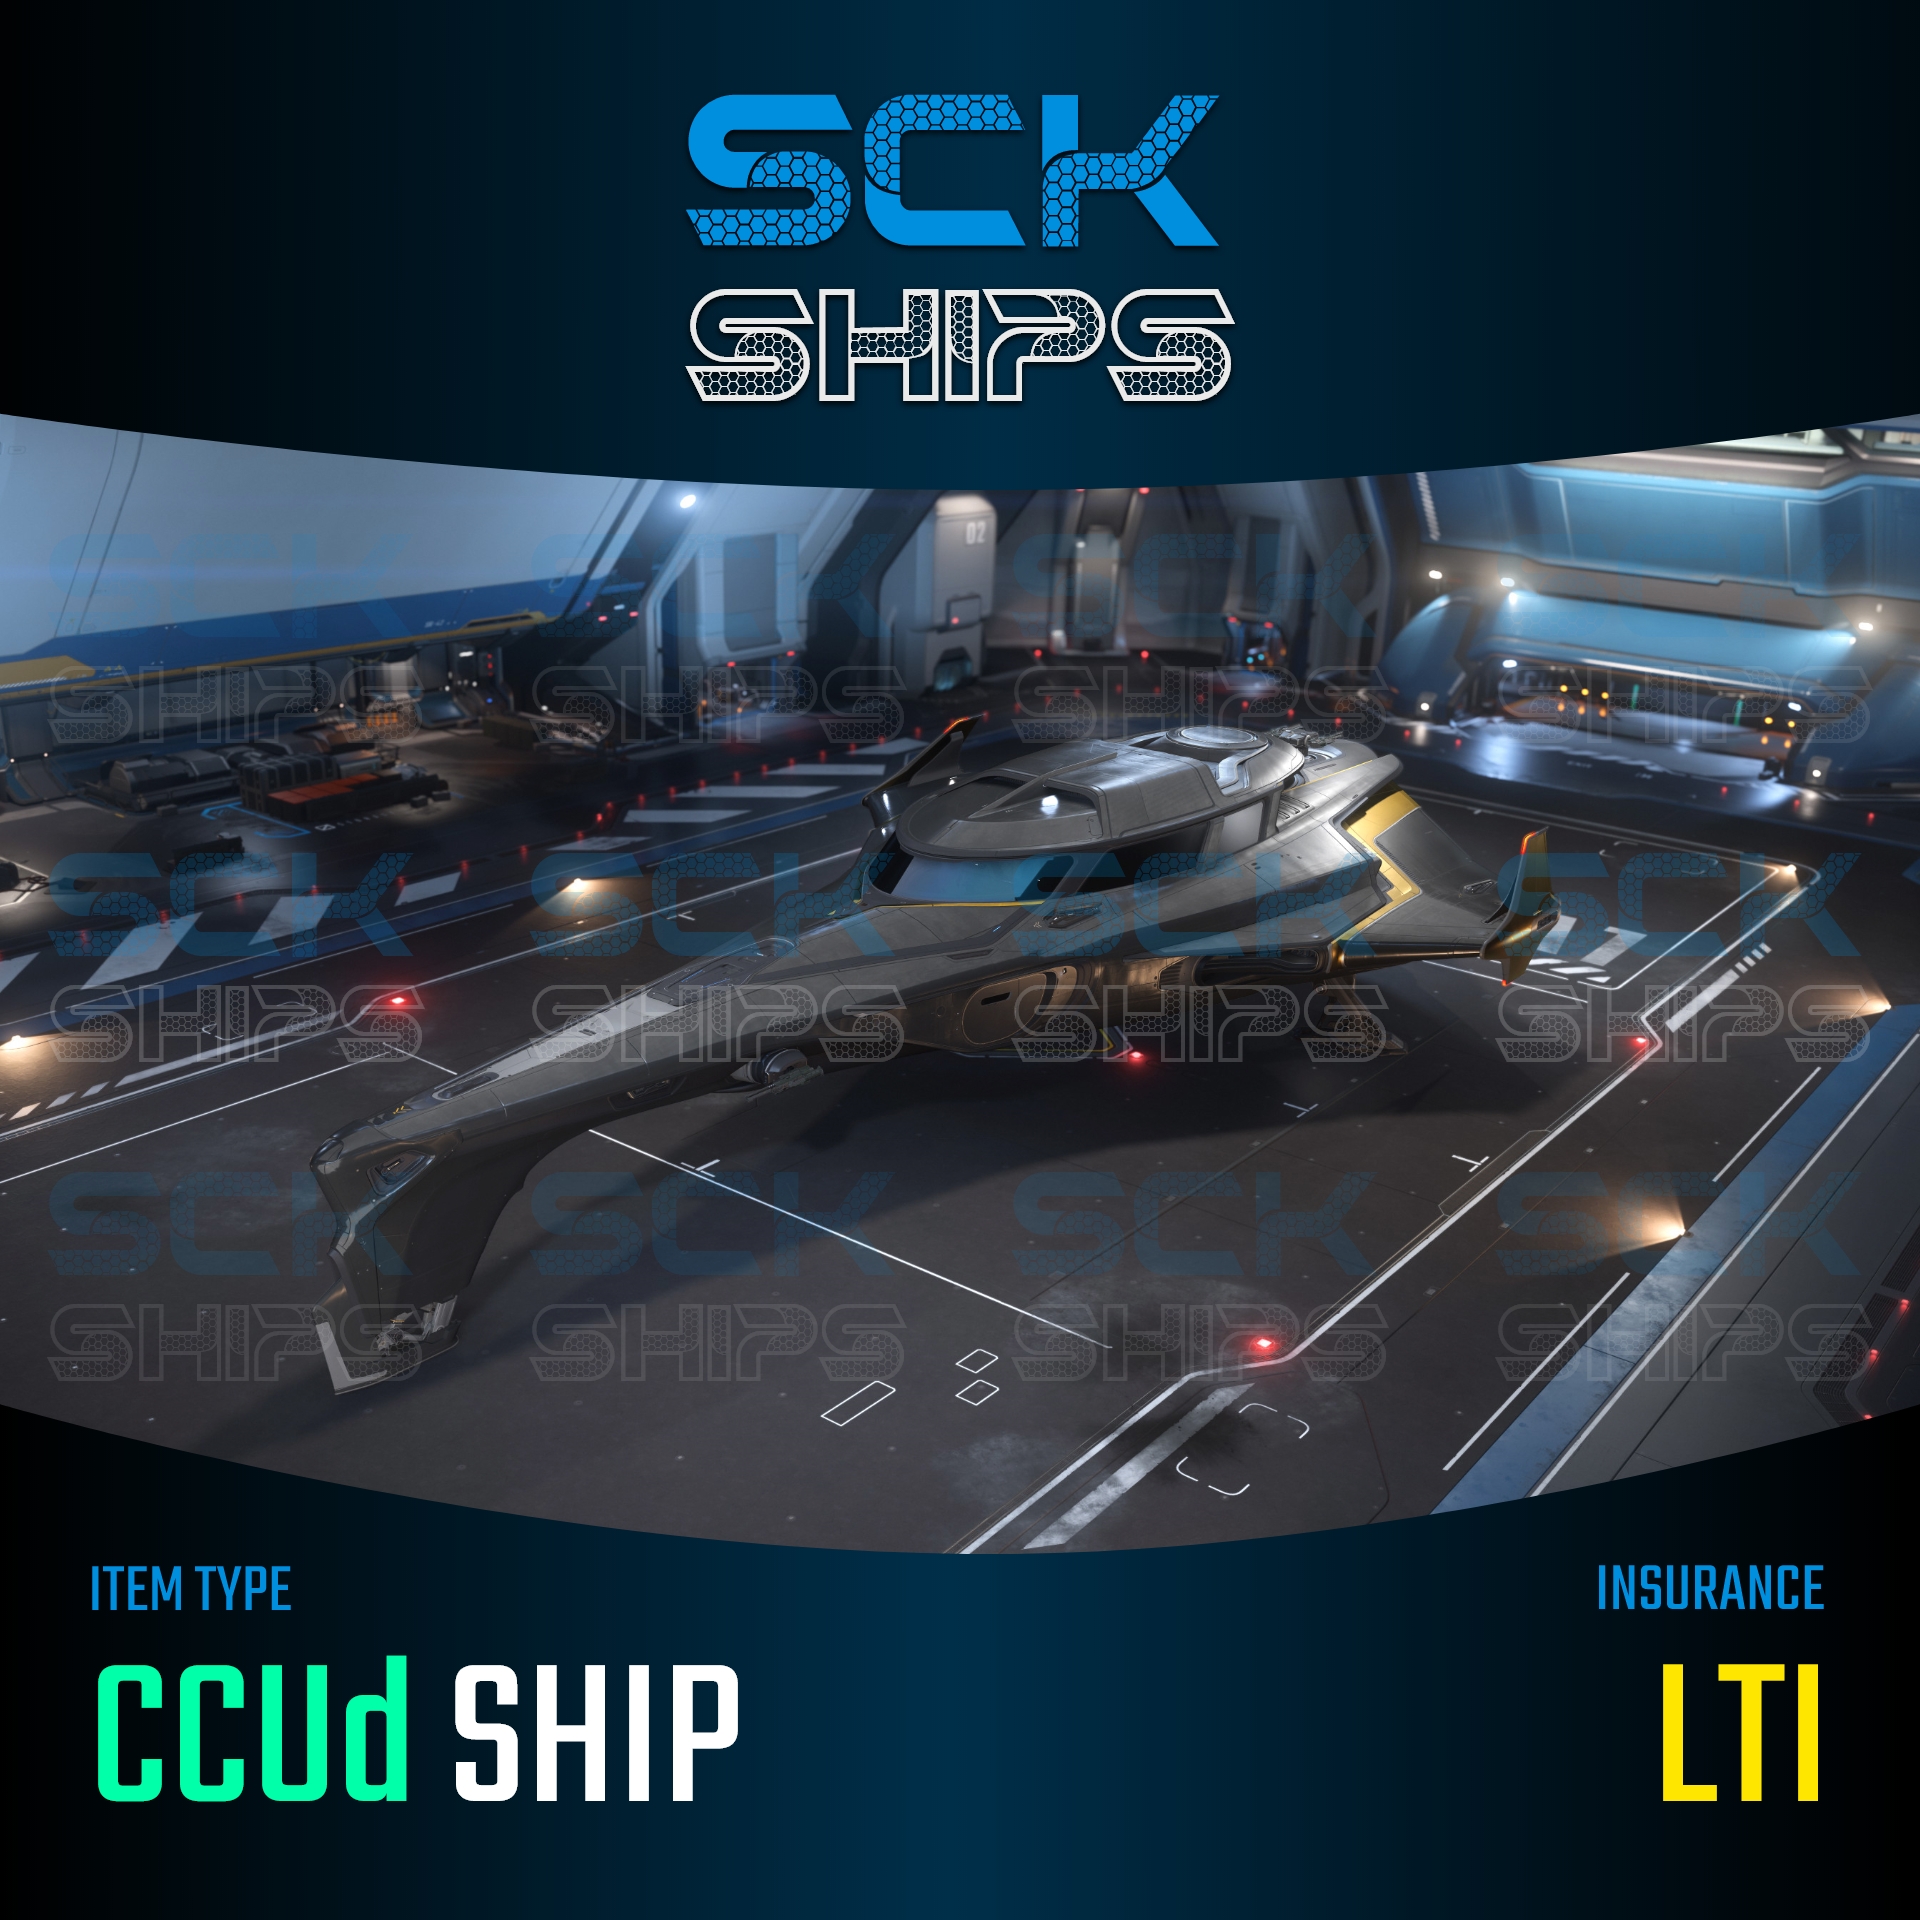 Origin 400i LTI - SckShips